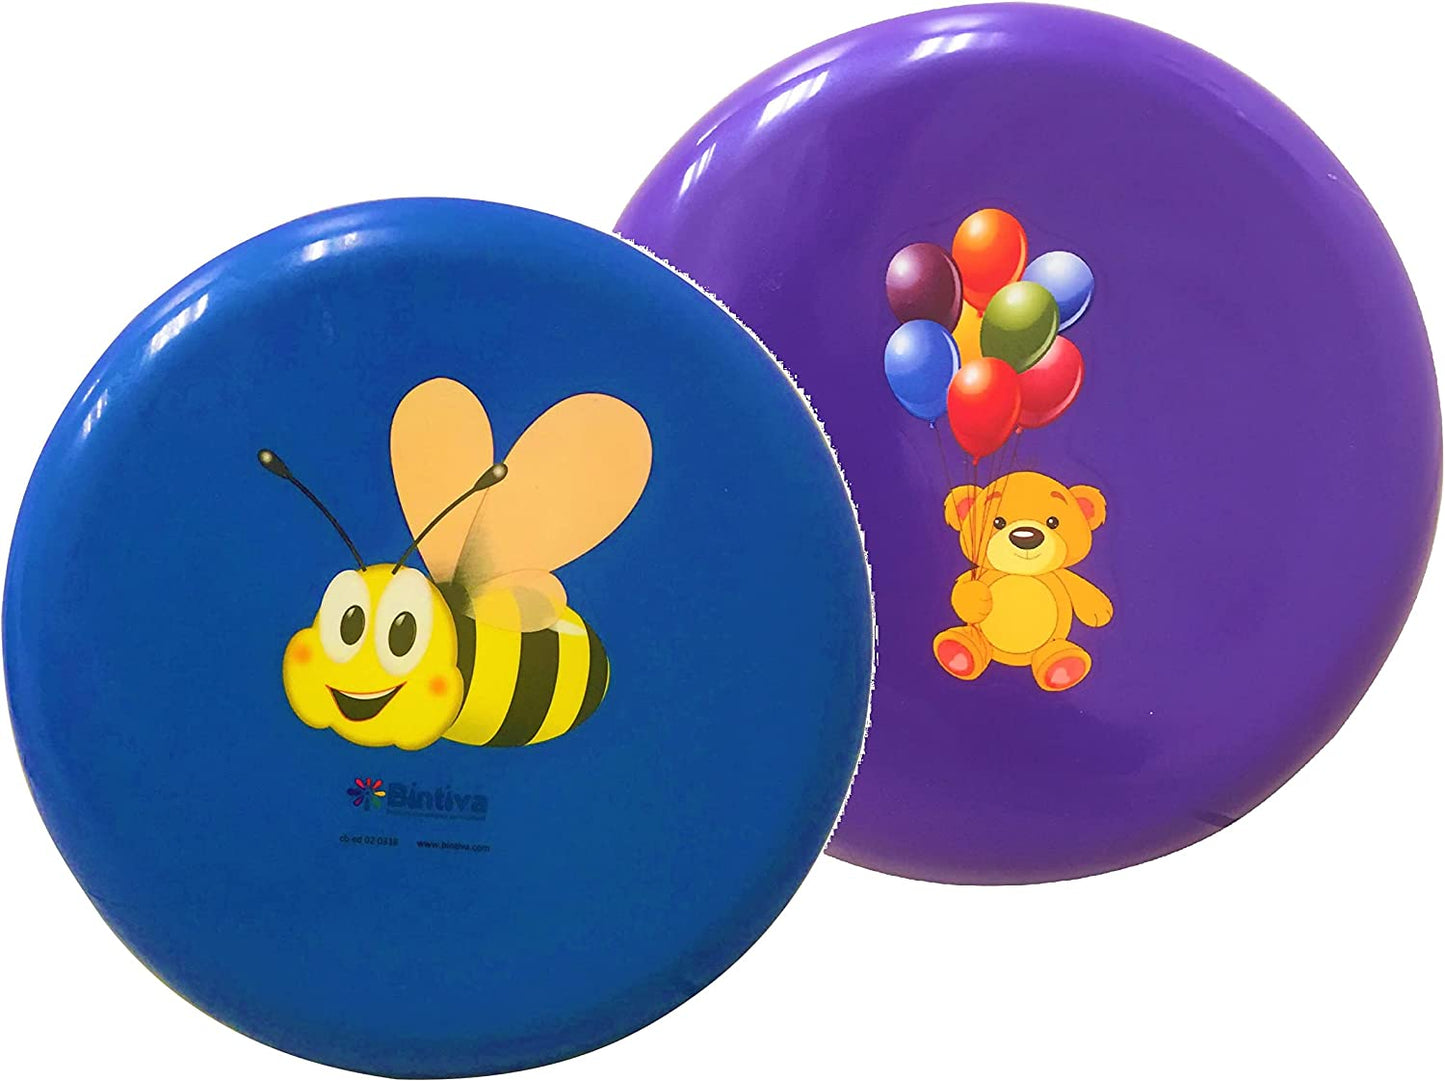 Wiggle Seat - Small - 26cm/ 10 inches , Children's mini disc for preschool